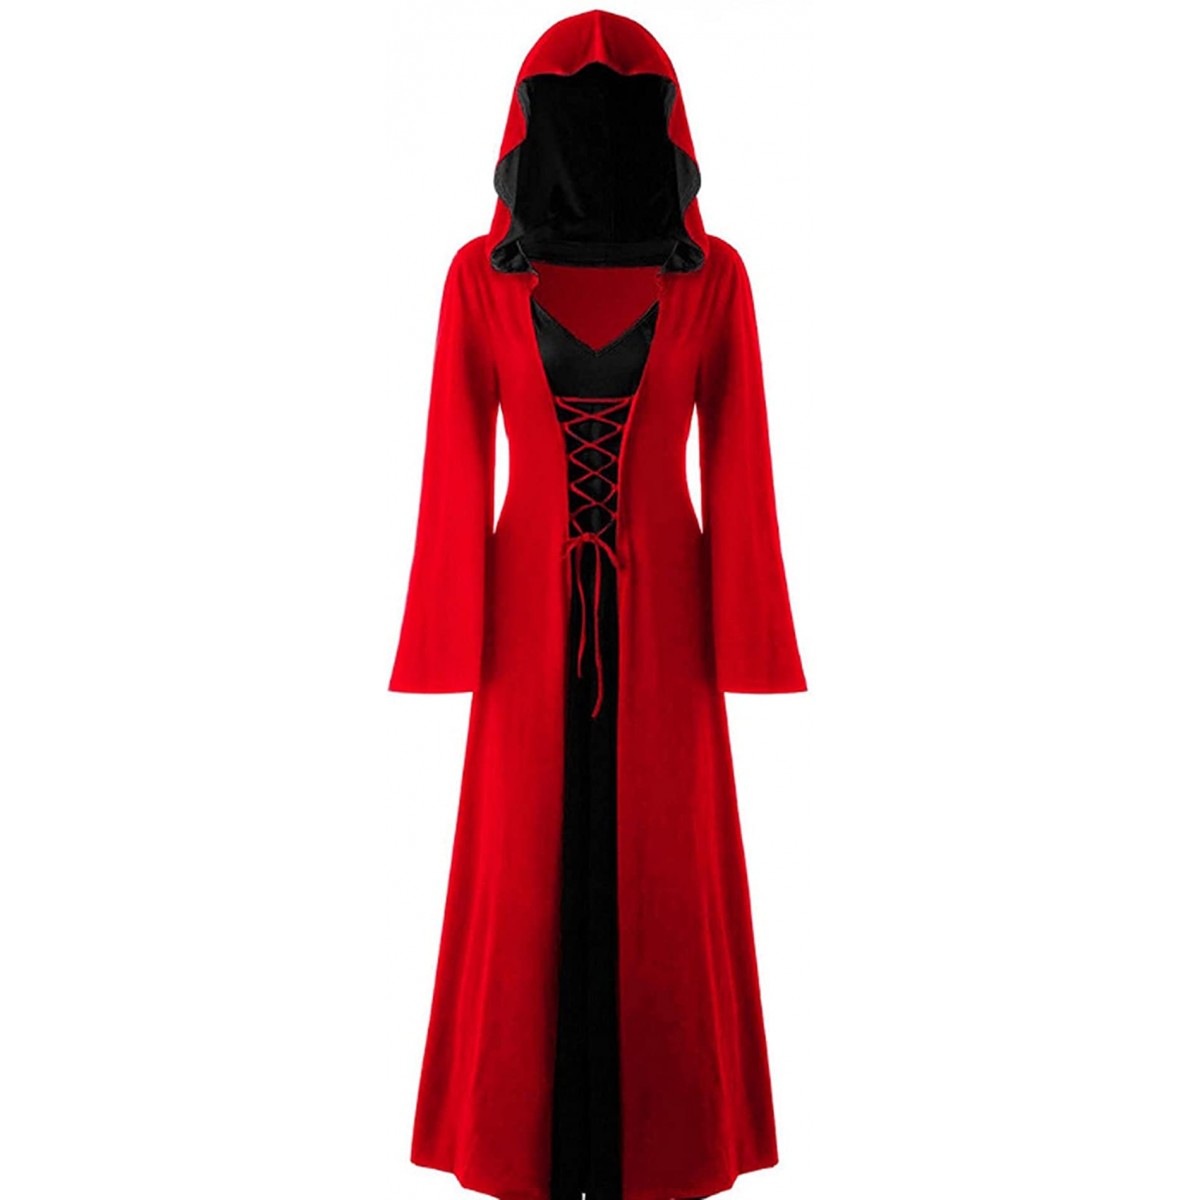 Costume da Lady Vampiro, rosso, per adulti